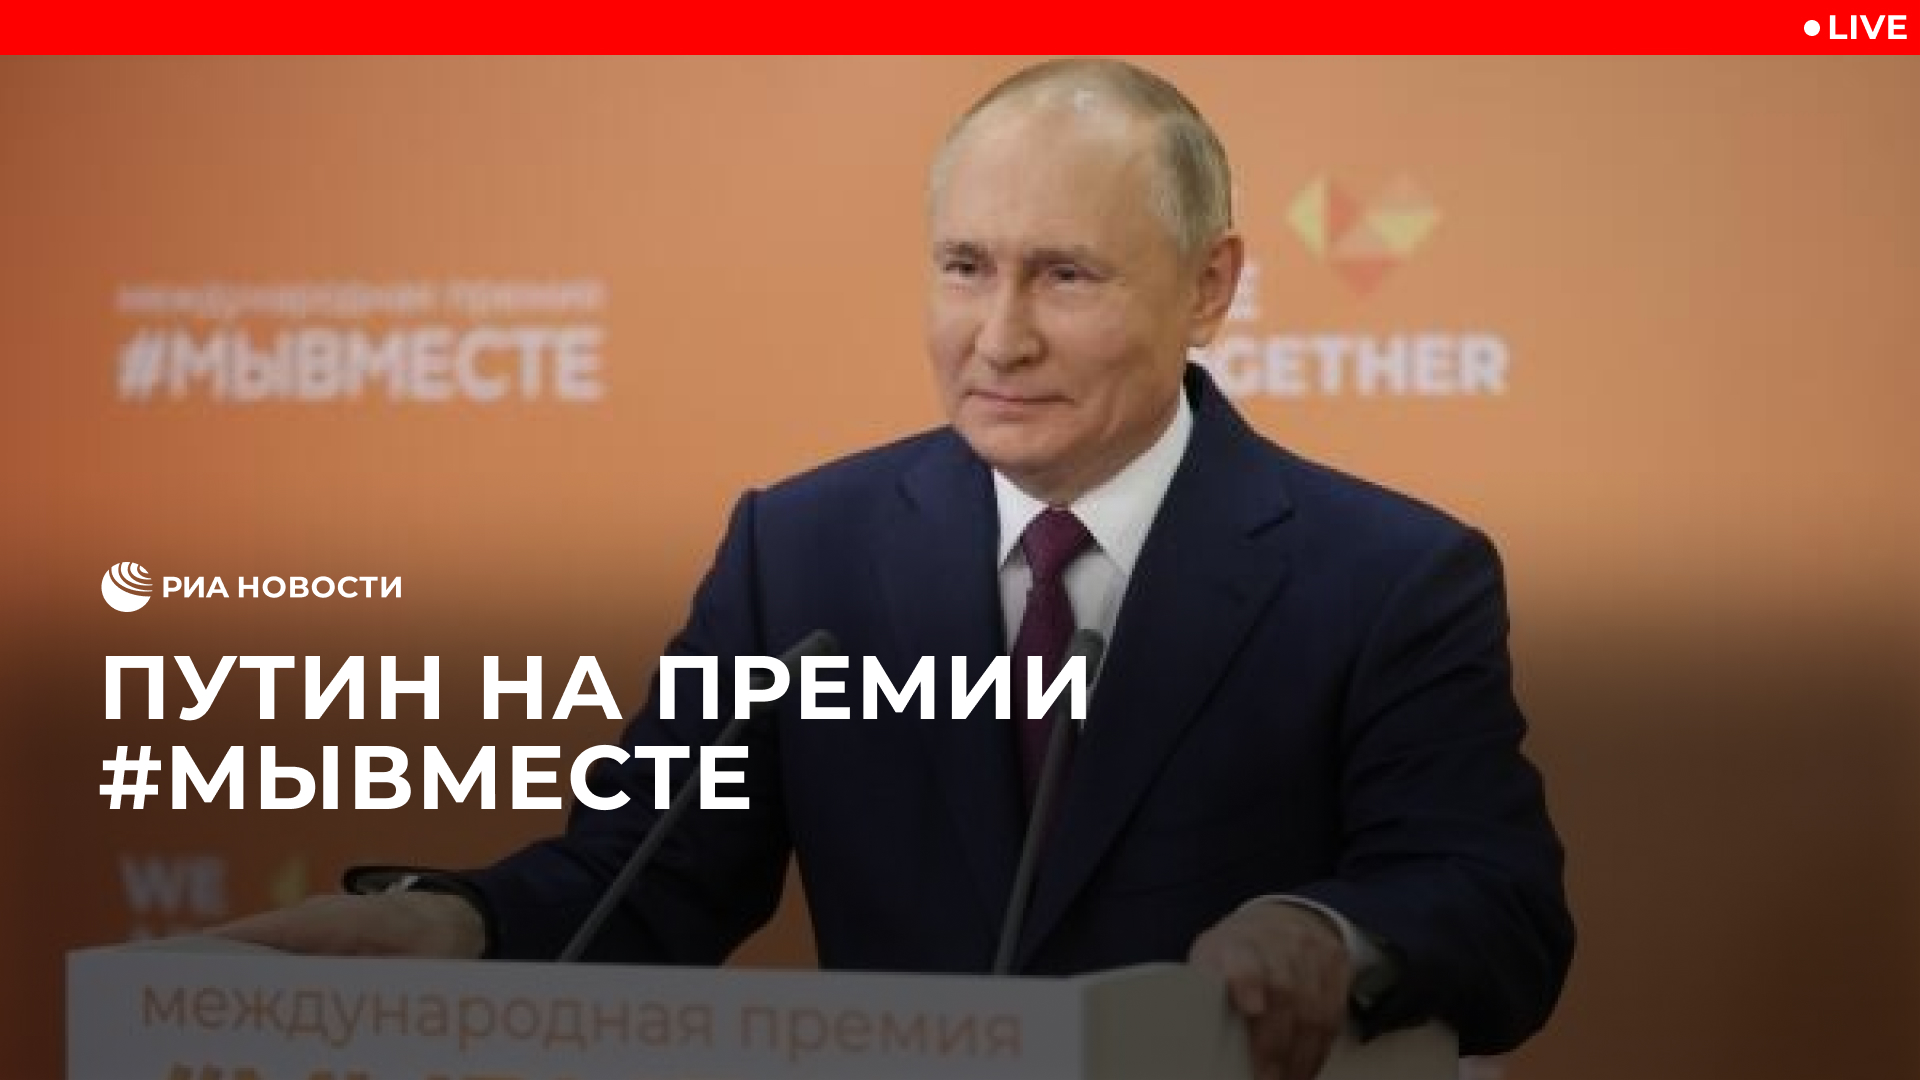 Путин на церемонии вручения премии #МЫВМЕСТЕ